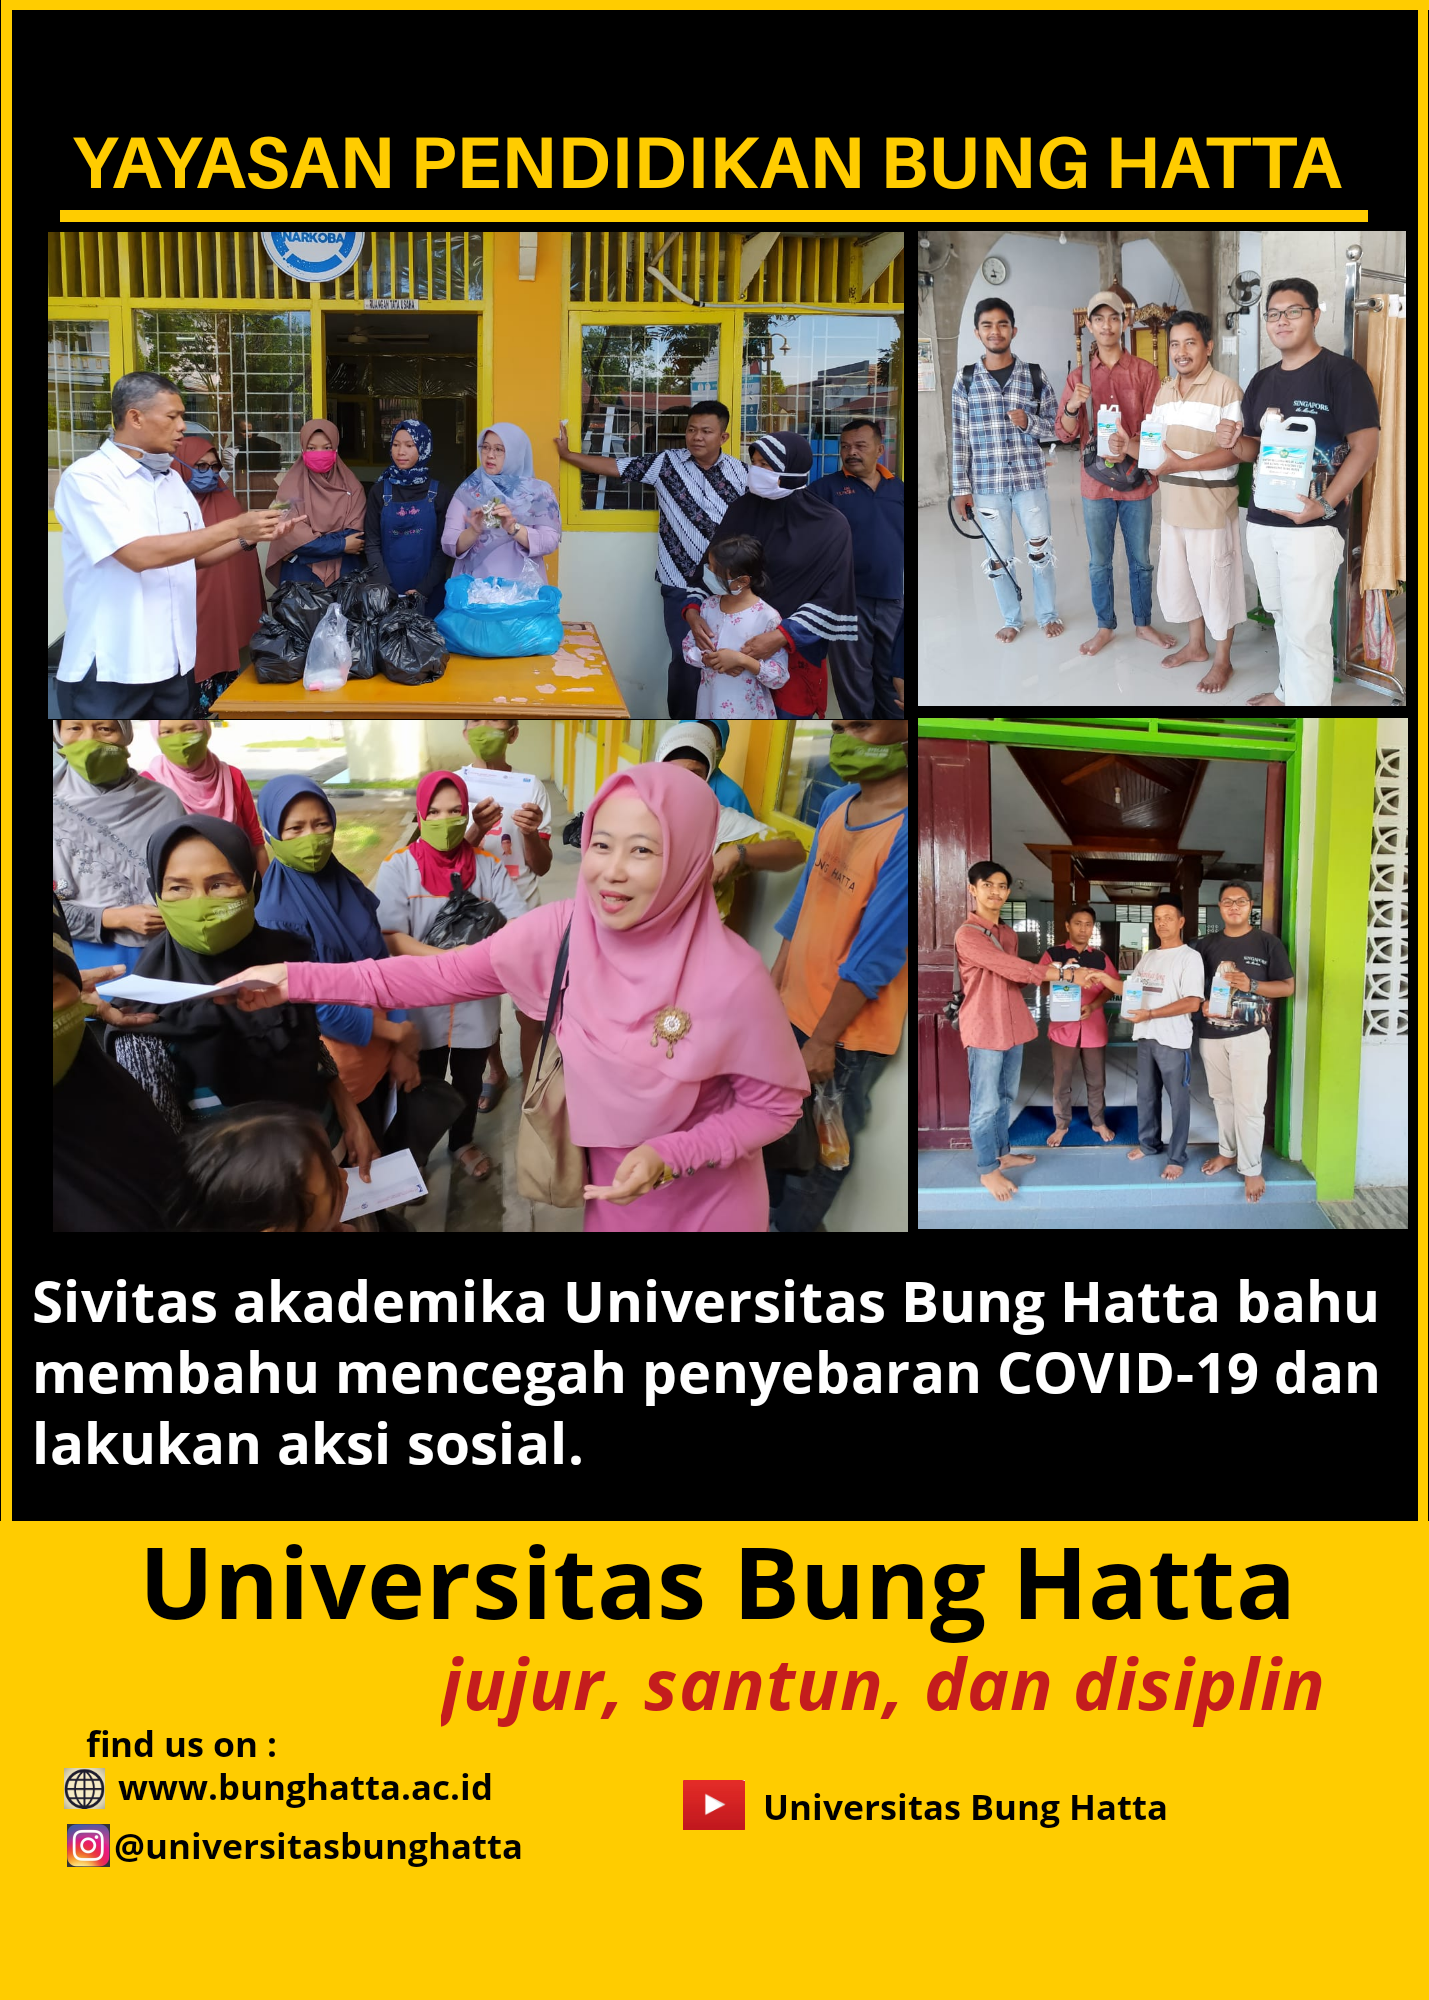 Sivitas Akademika Cegah Penyebaran COVID-19 dan Lakukan Aksi Sosial